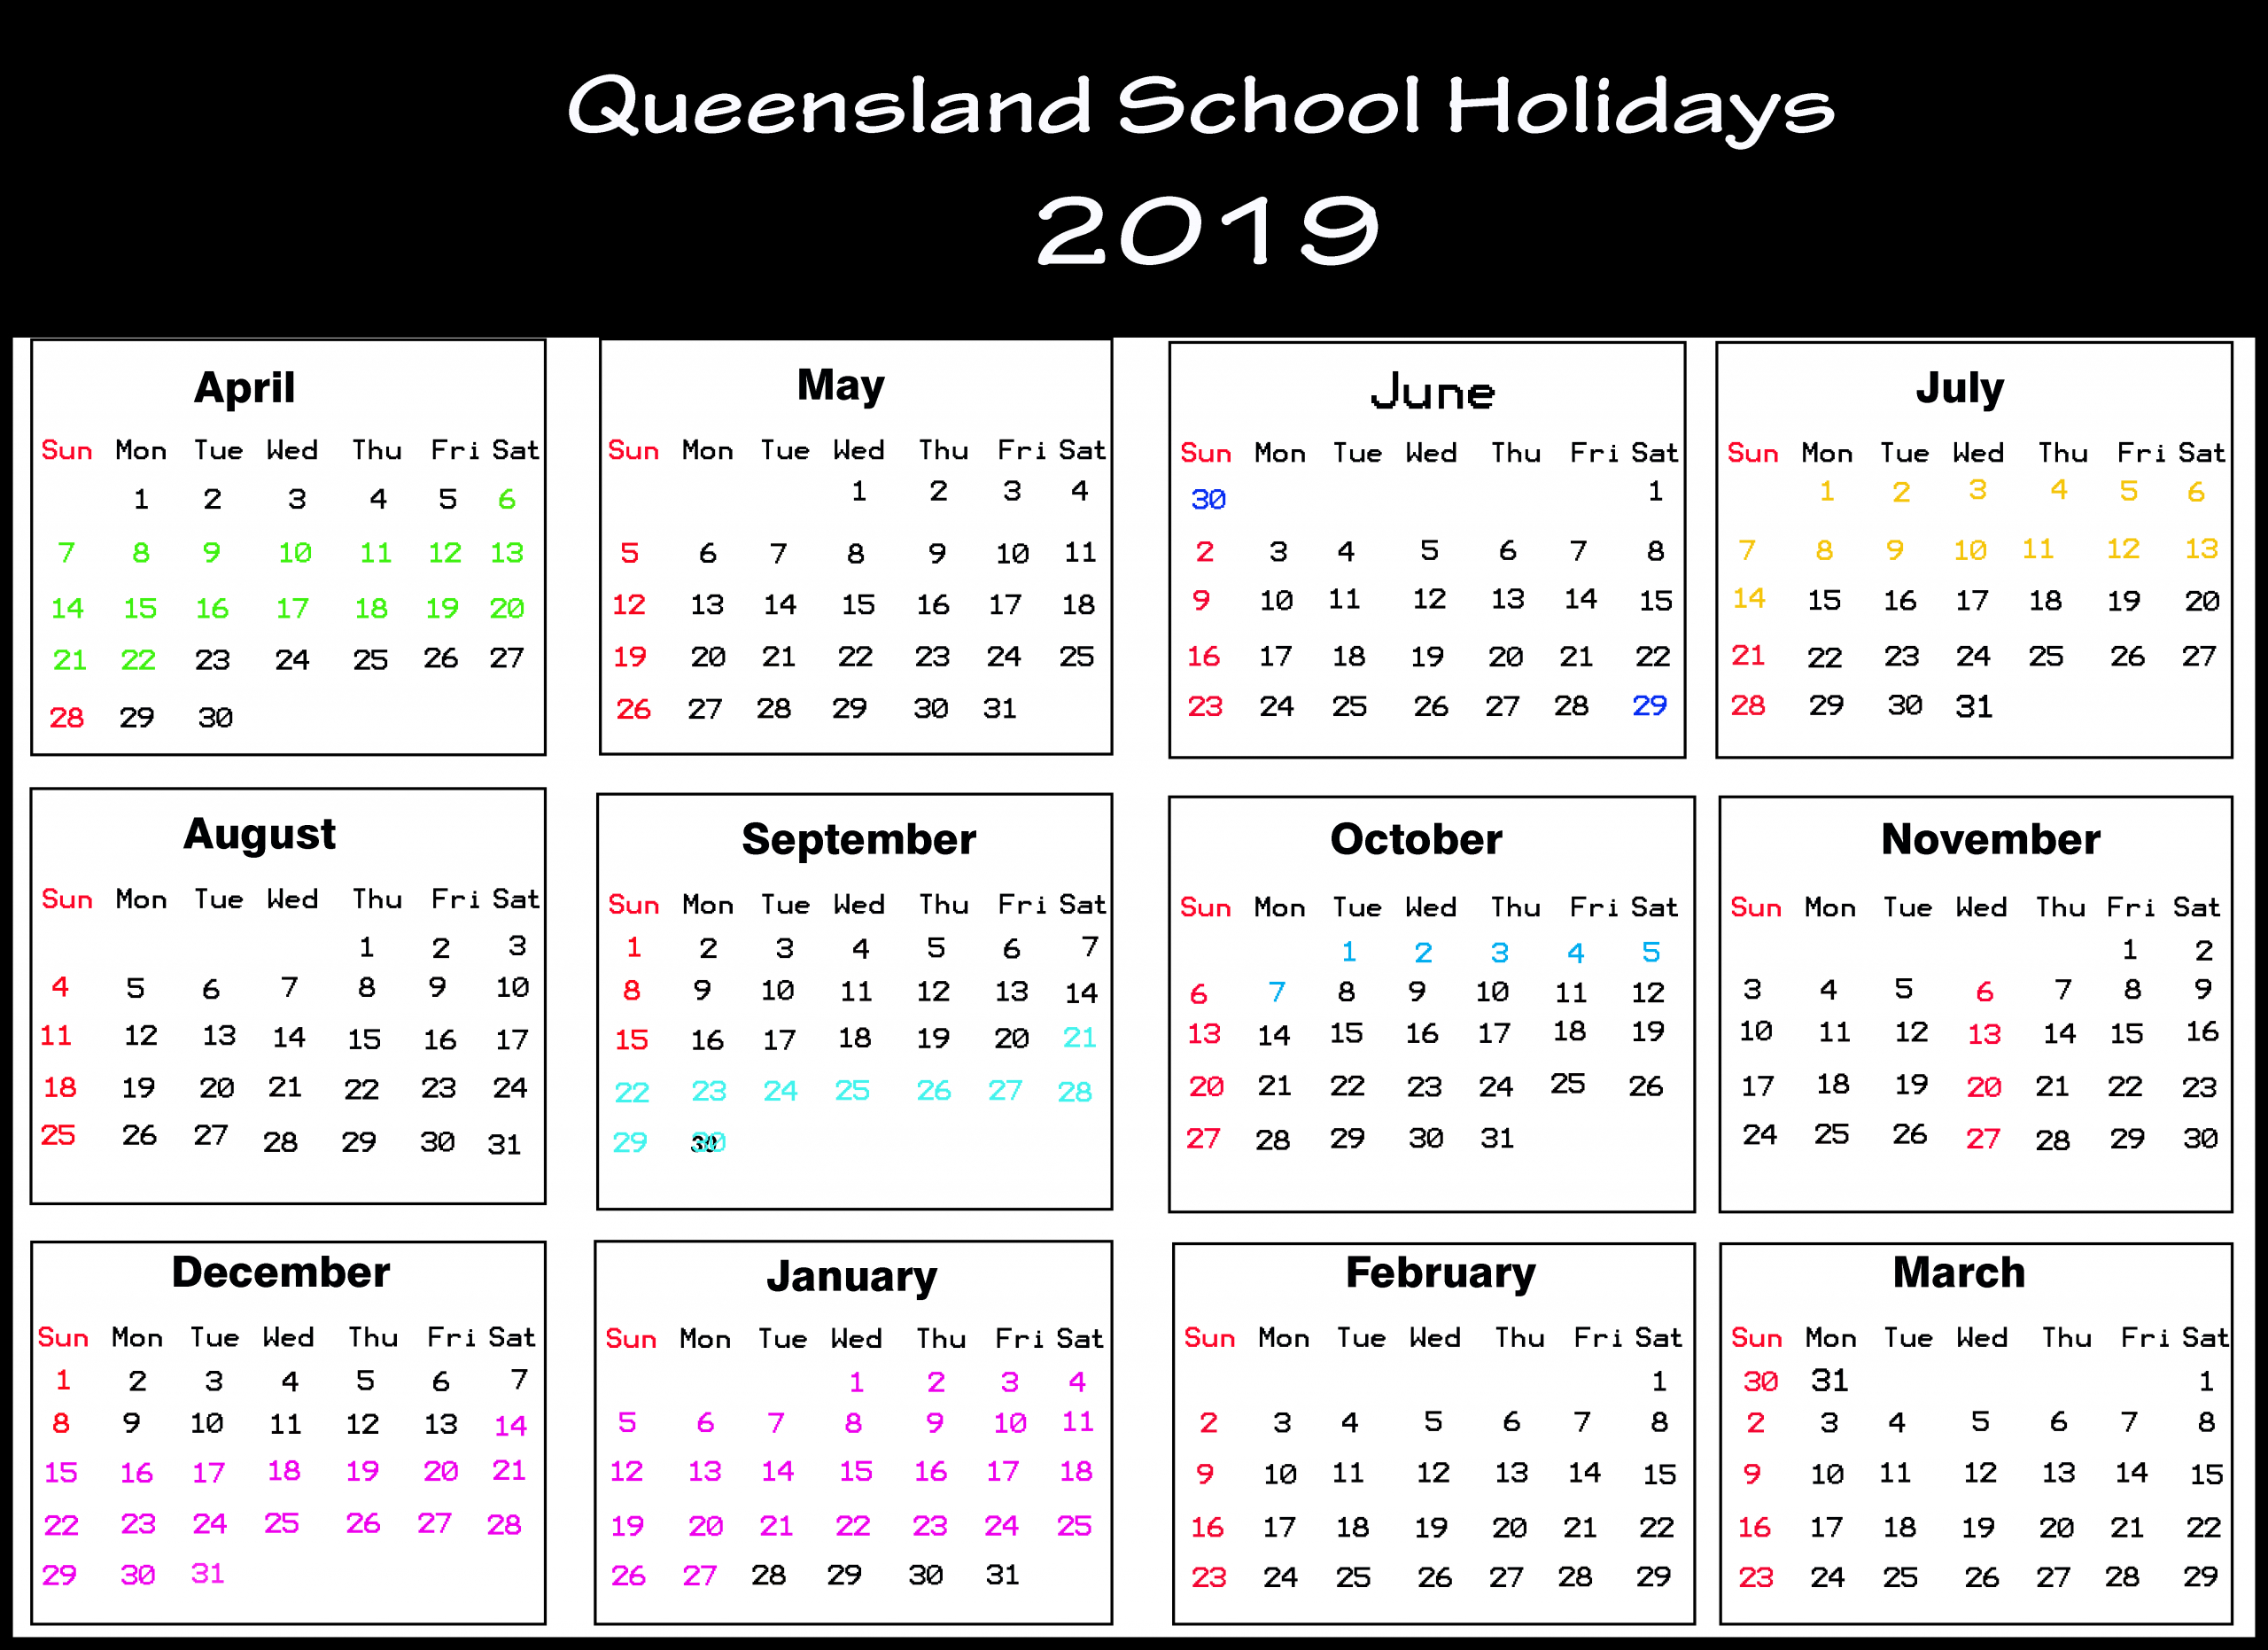 Catch School Calendar Queensland State Schools 2020